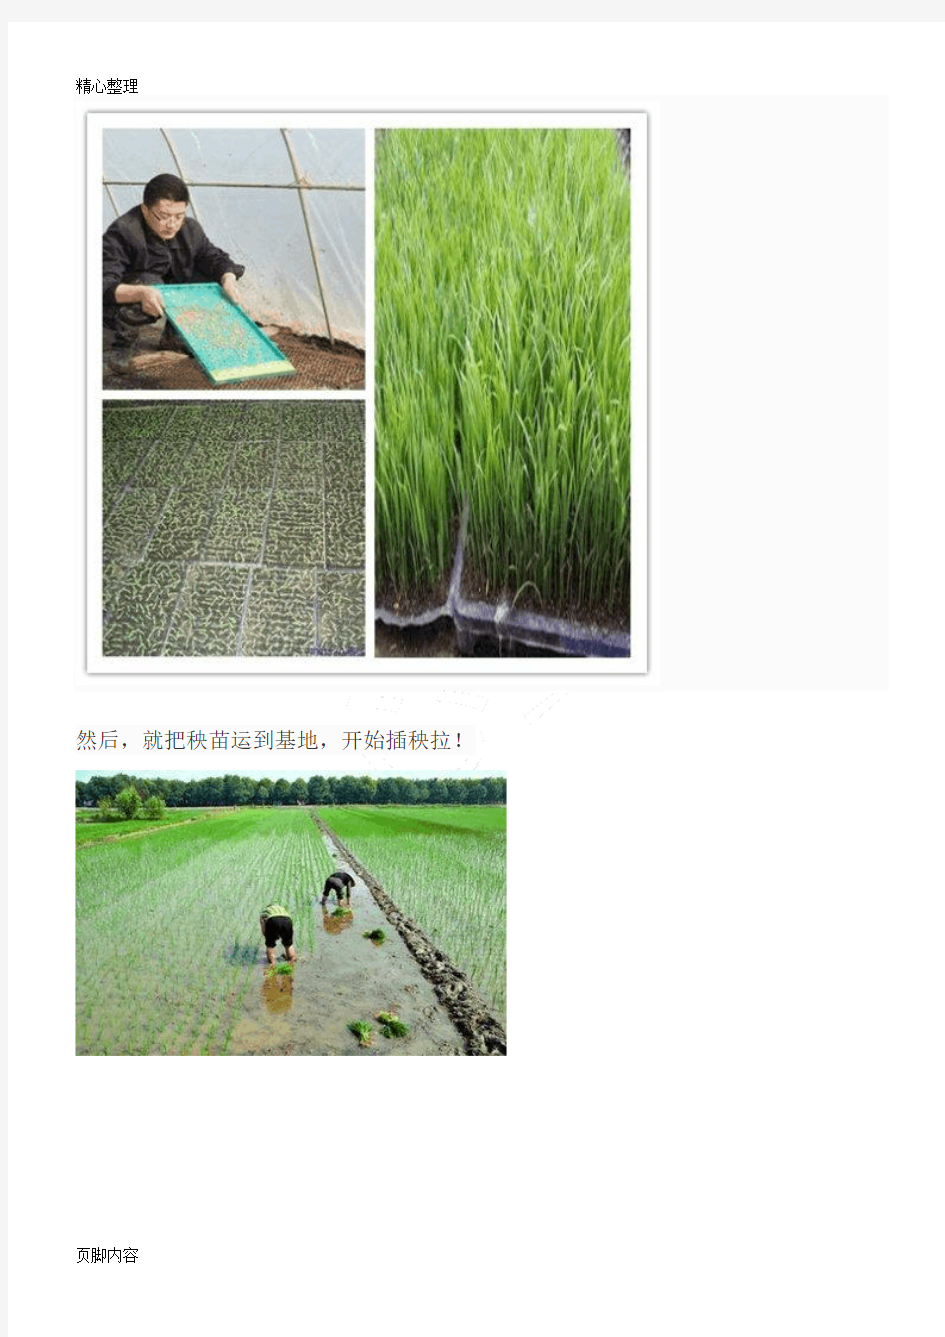 大米生产过程